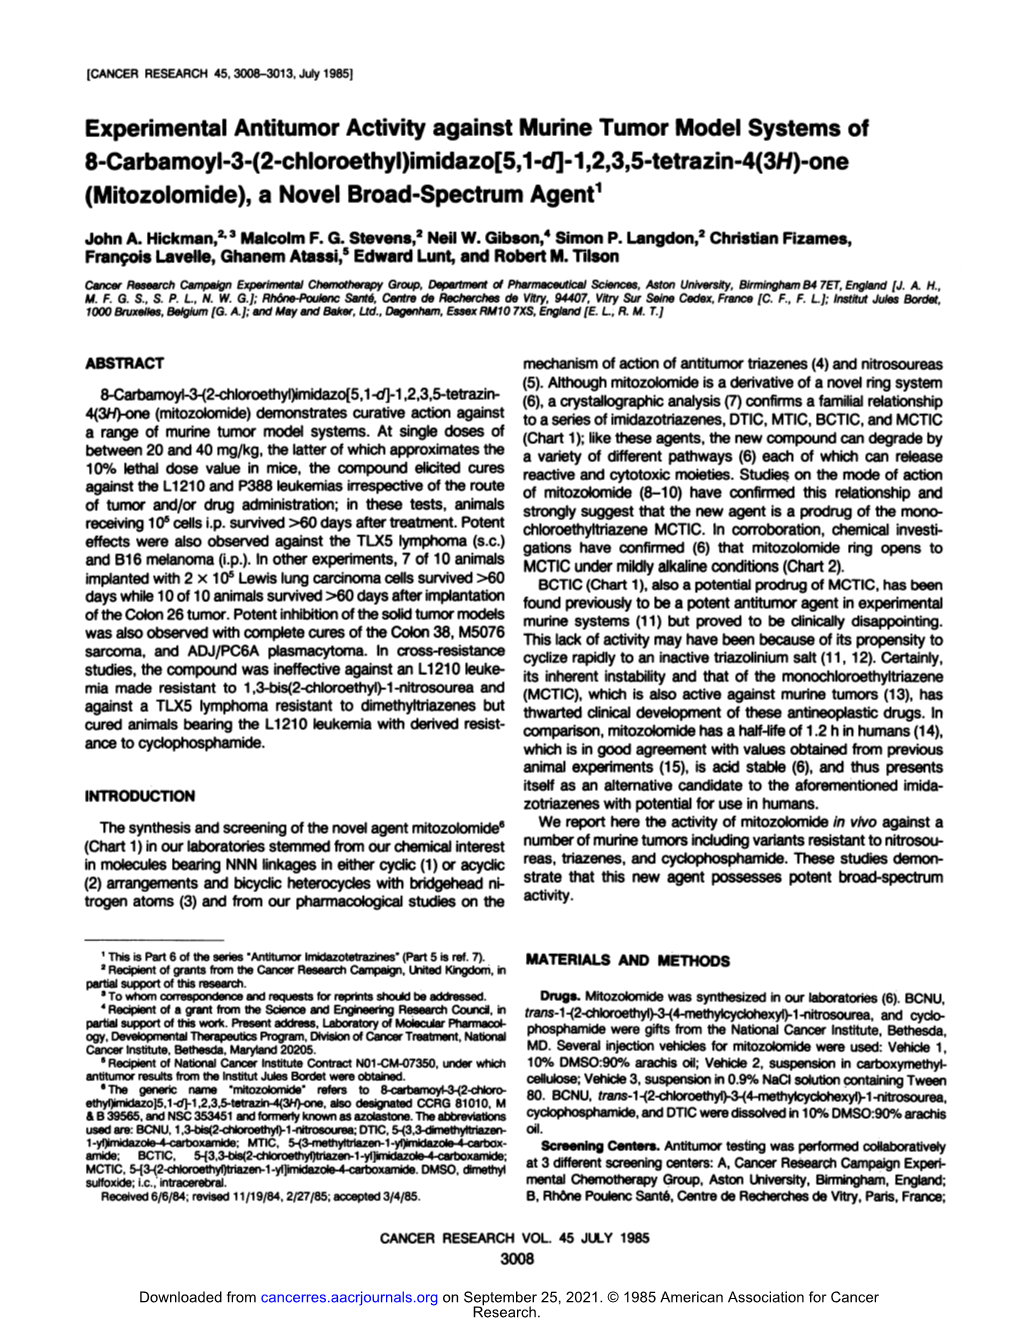 Experimental Antitumor Activity Against Murine Tumor Model